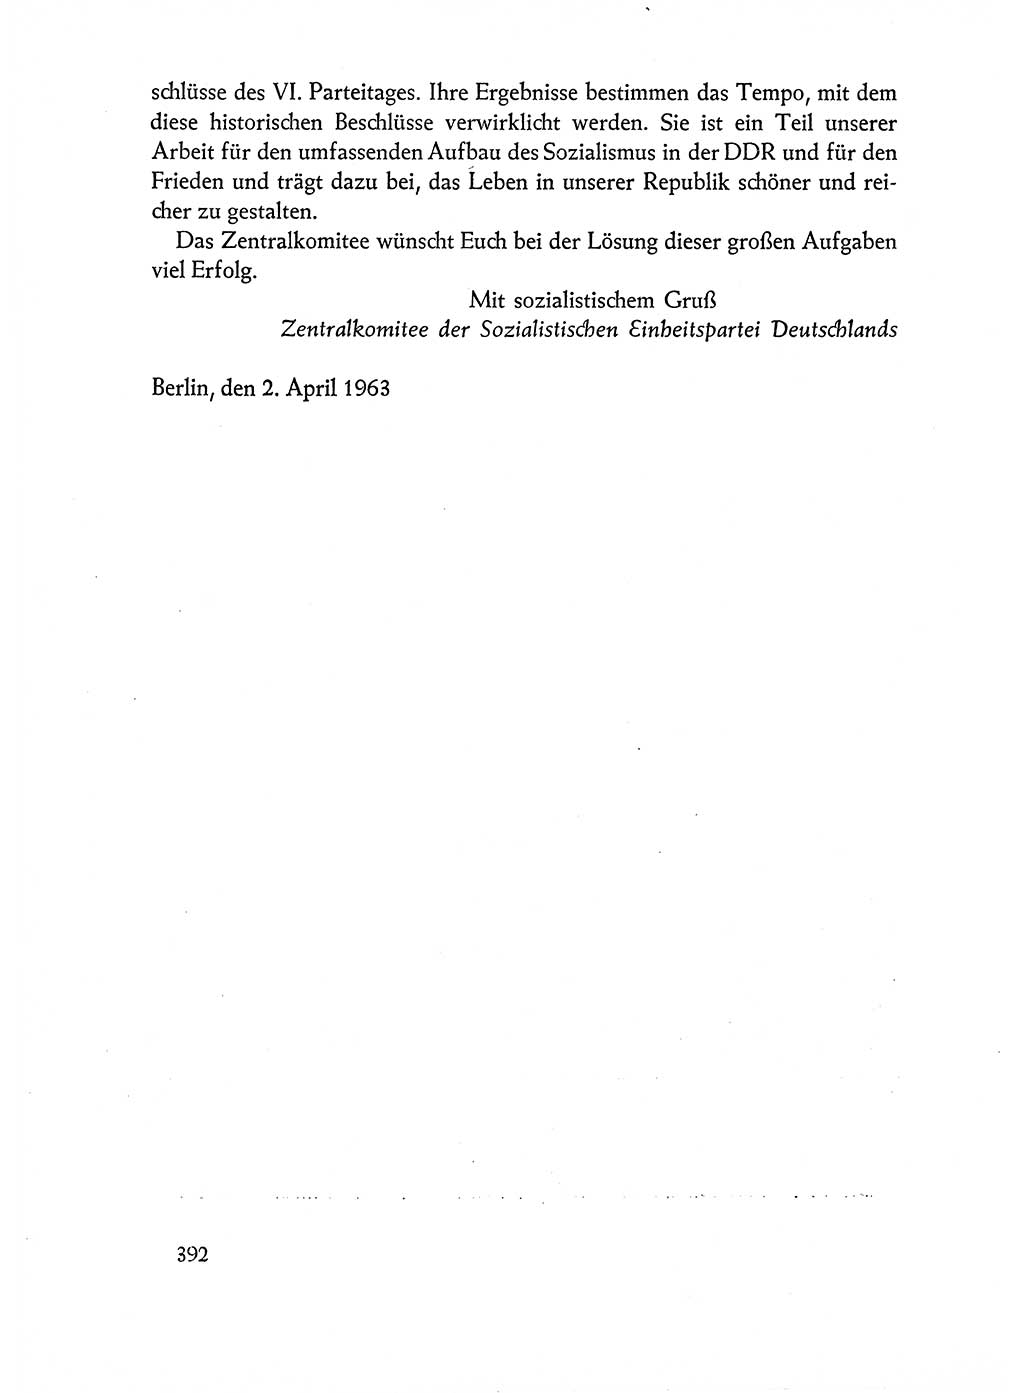 Dokumente der Sozialistischen Einheitspartei Deutschlands (SED) [Deutsche Demokratische Republik (DDR)] 1962-1963, Seite 392 (Dok. SED DDR 1962-1963, S. 392)